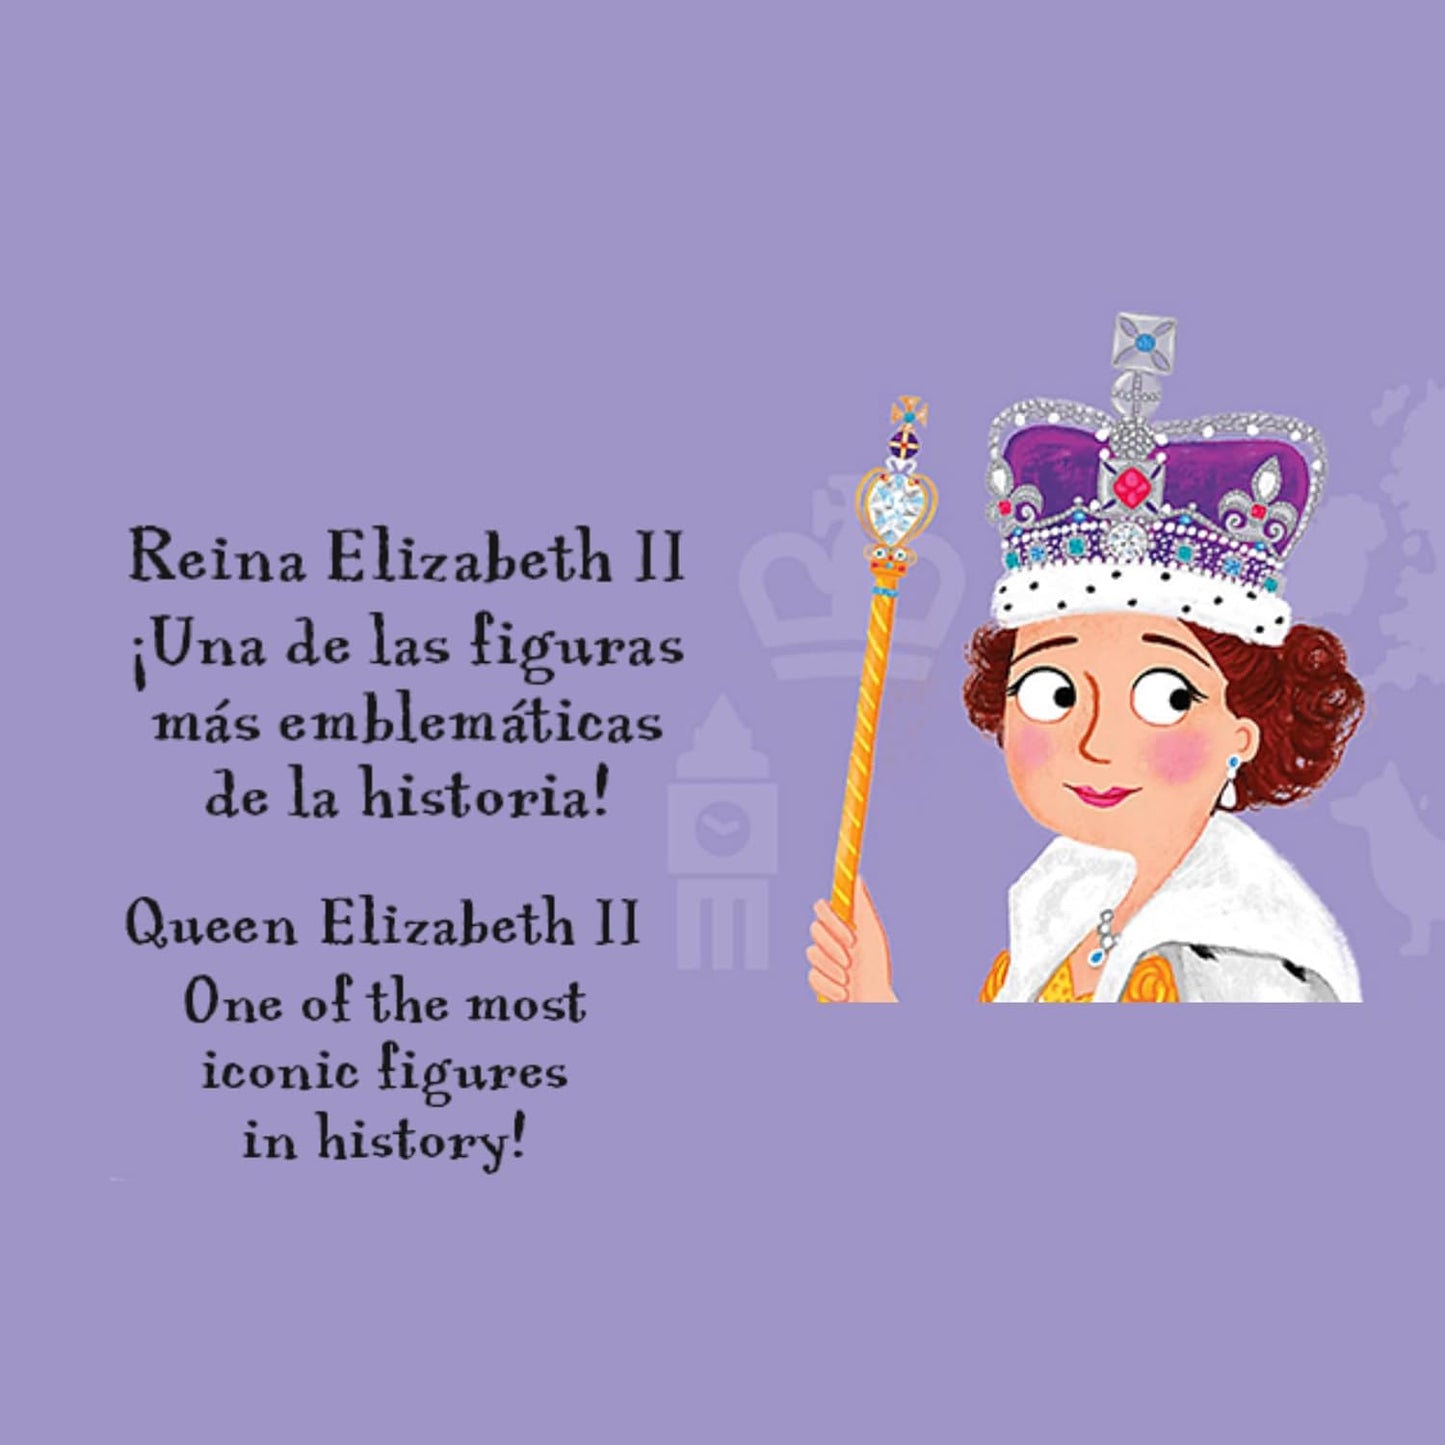 Reina Elizabeth II (La reina que escogió servir)